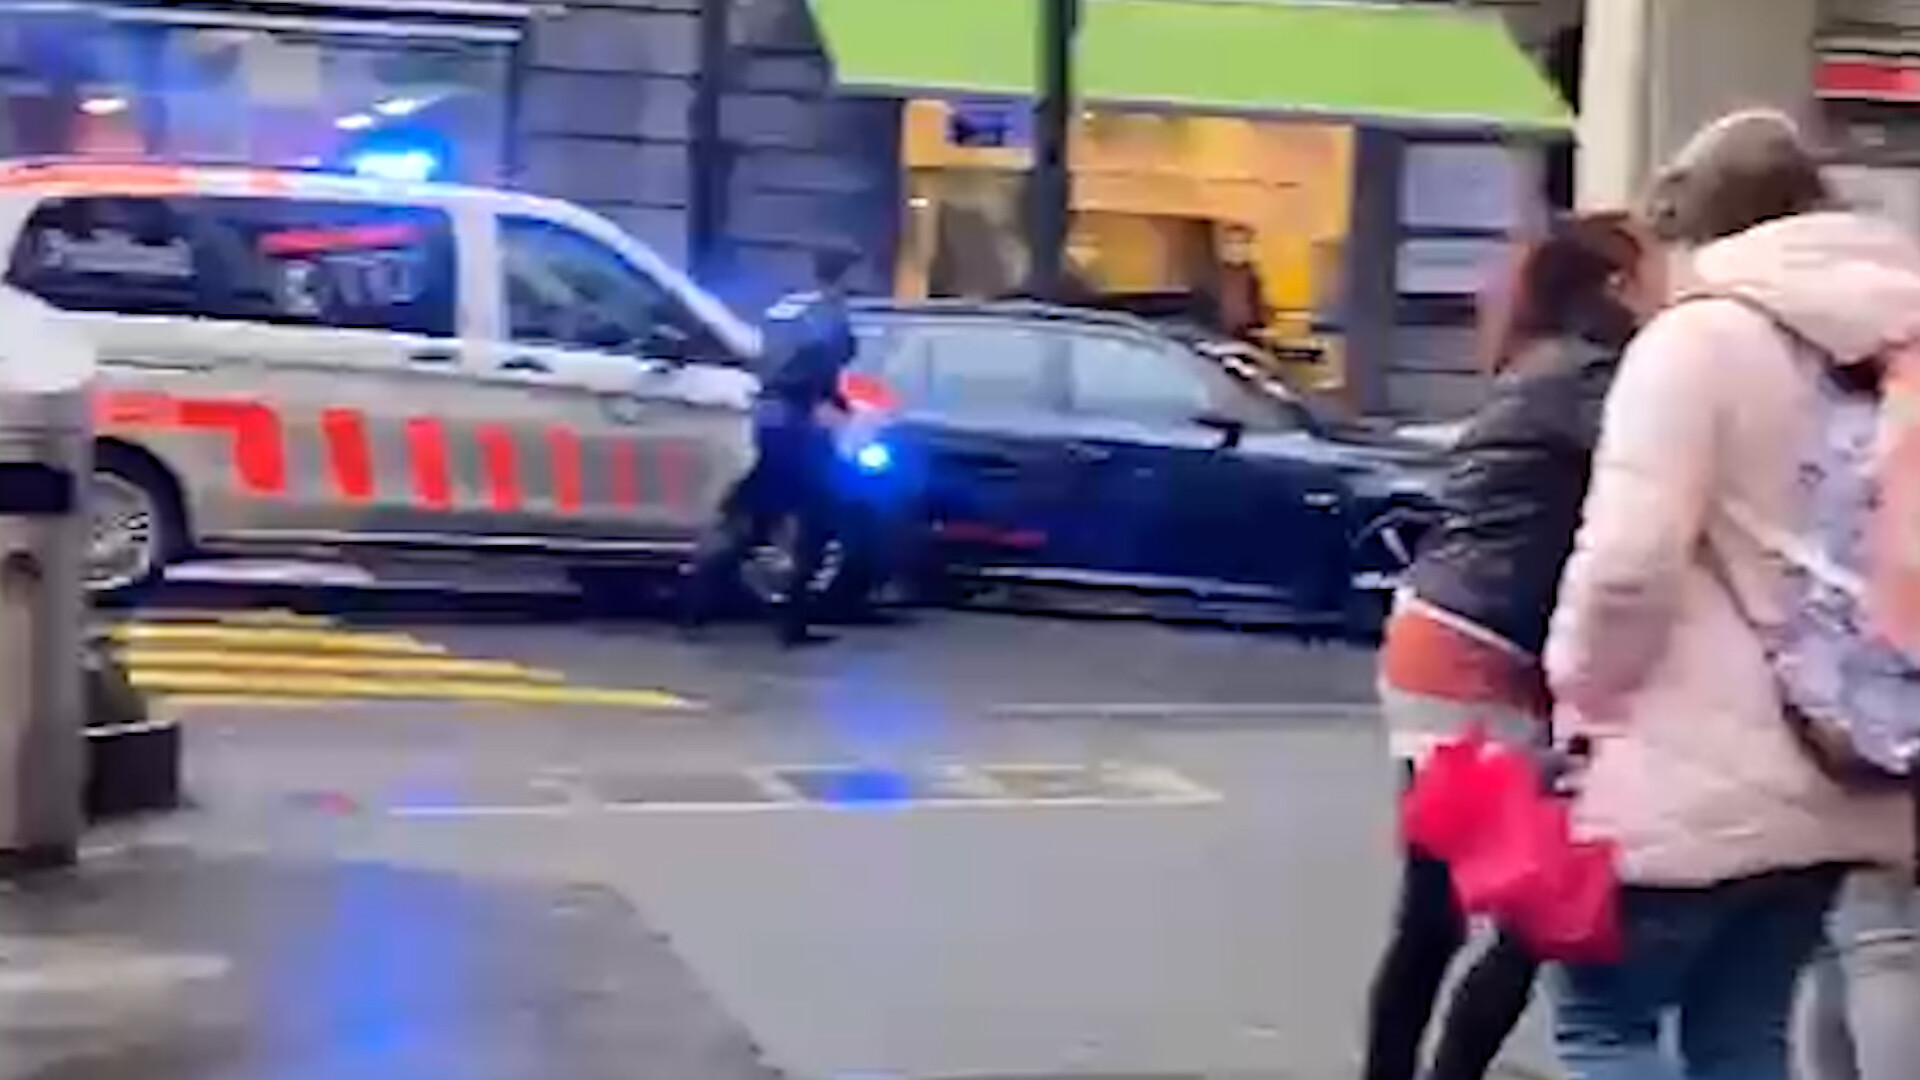 Luzern - Polizei schiesst bei Verfolgungsjagd mitten in der Stadt auf Auto  - 20 Minuten